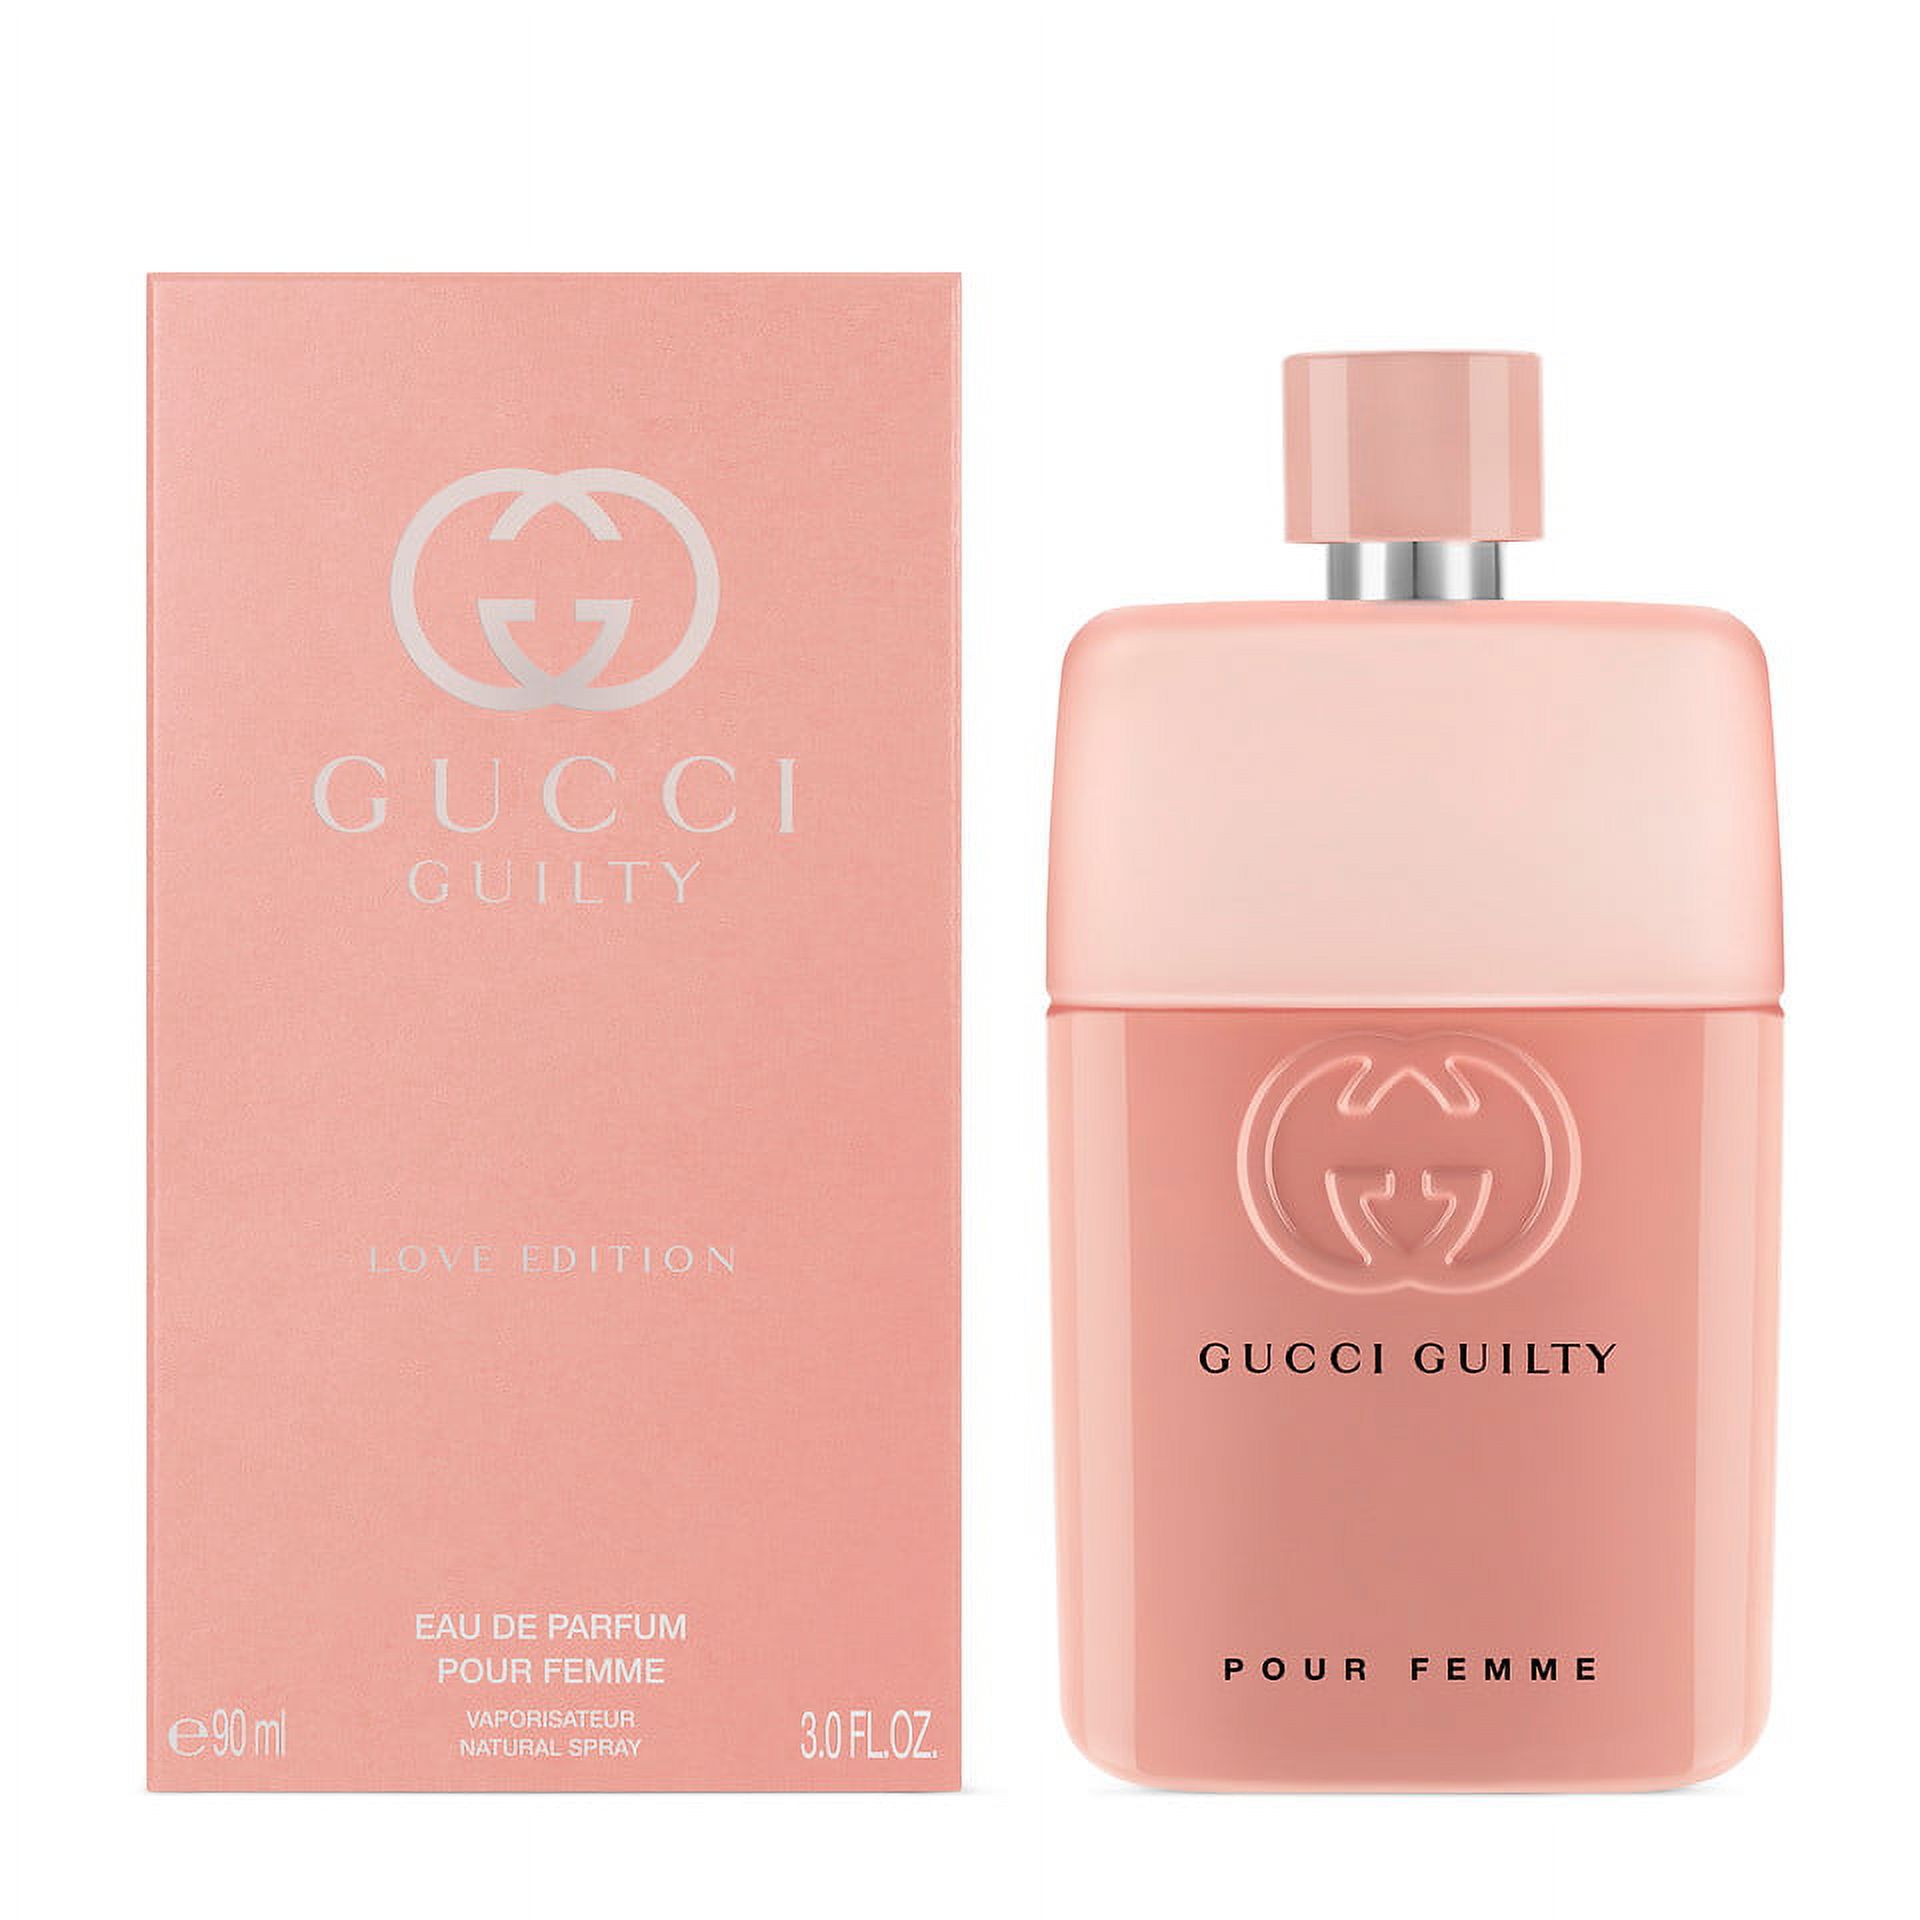 Gucci Guilty Love Edition Pour Femme Eau de Parfum, Perfume for Women, 3 Oz - image 2 of 3